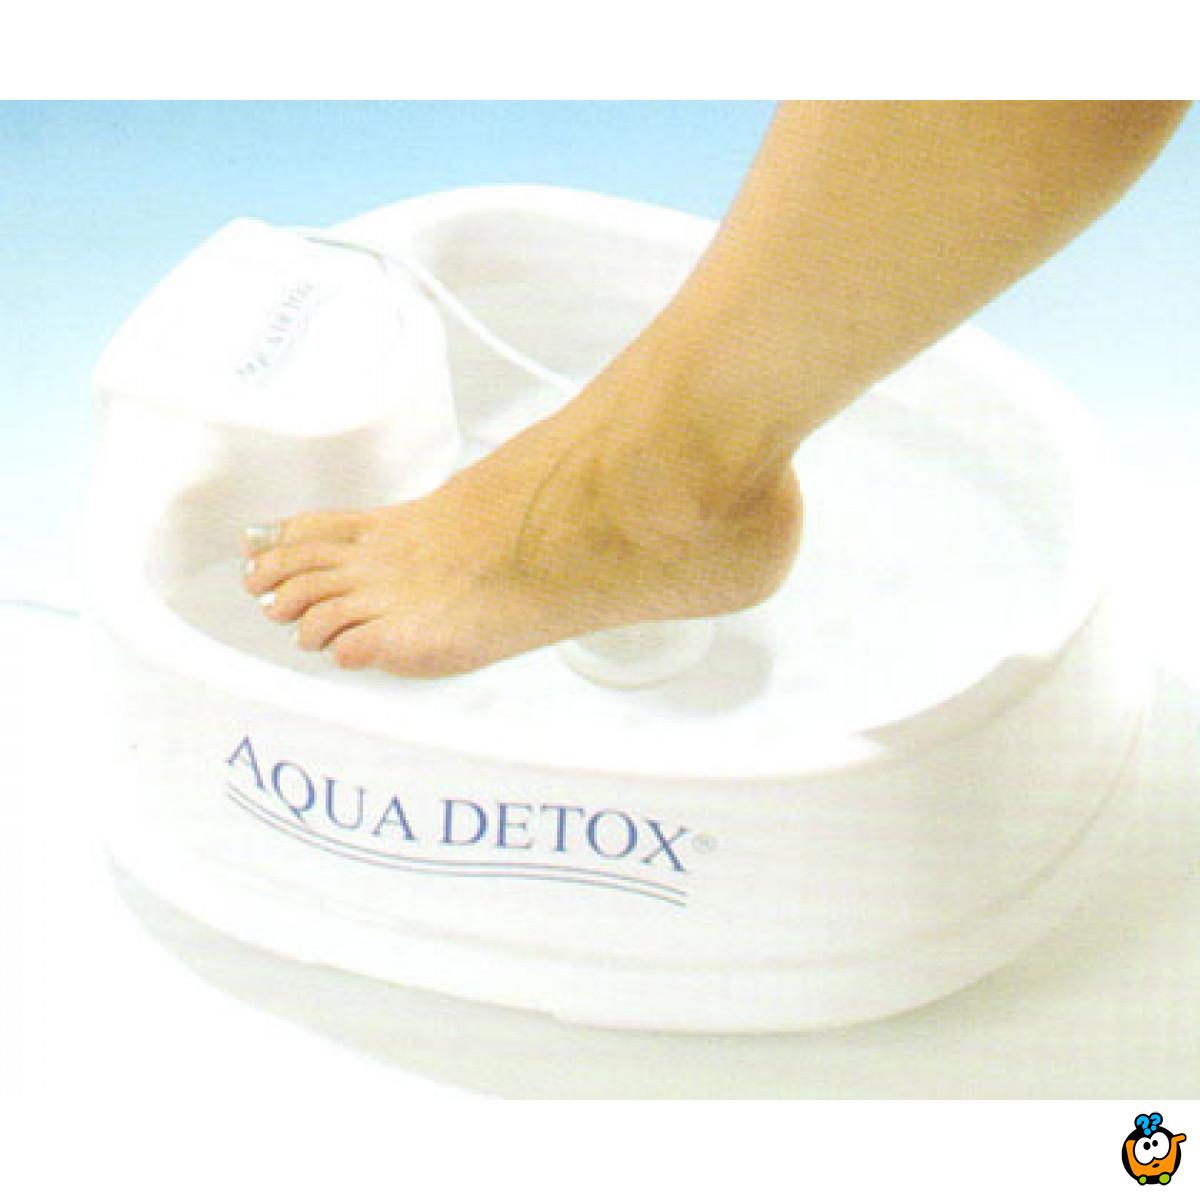 Aqua detox + GRATIS lakiranje noktiju na rukama i nogama